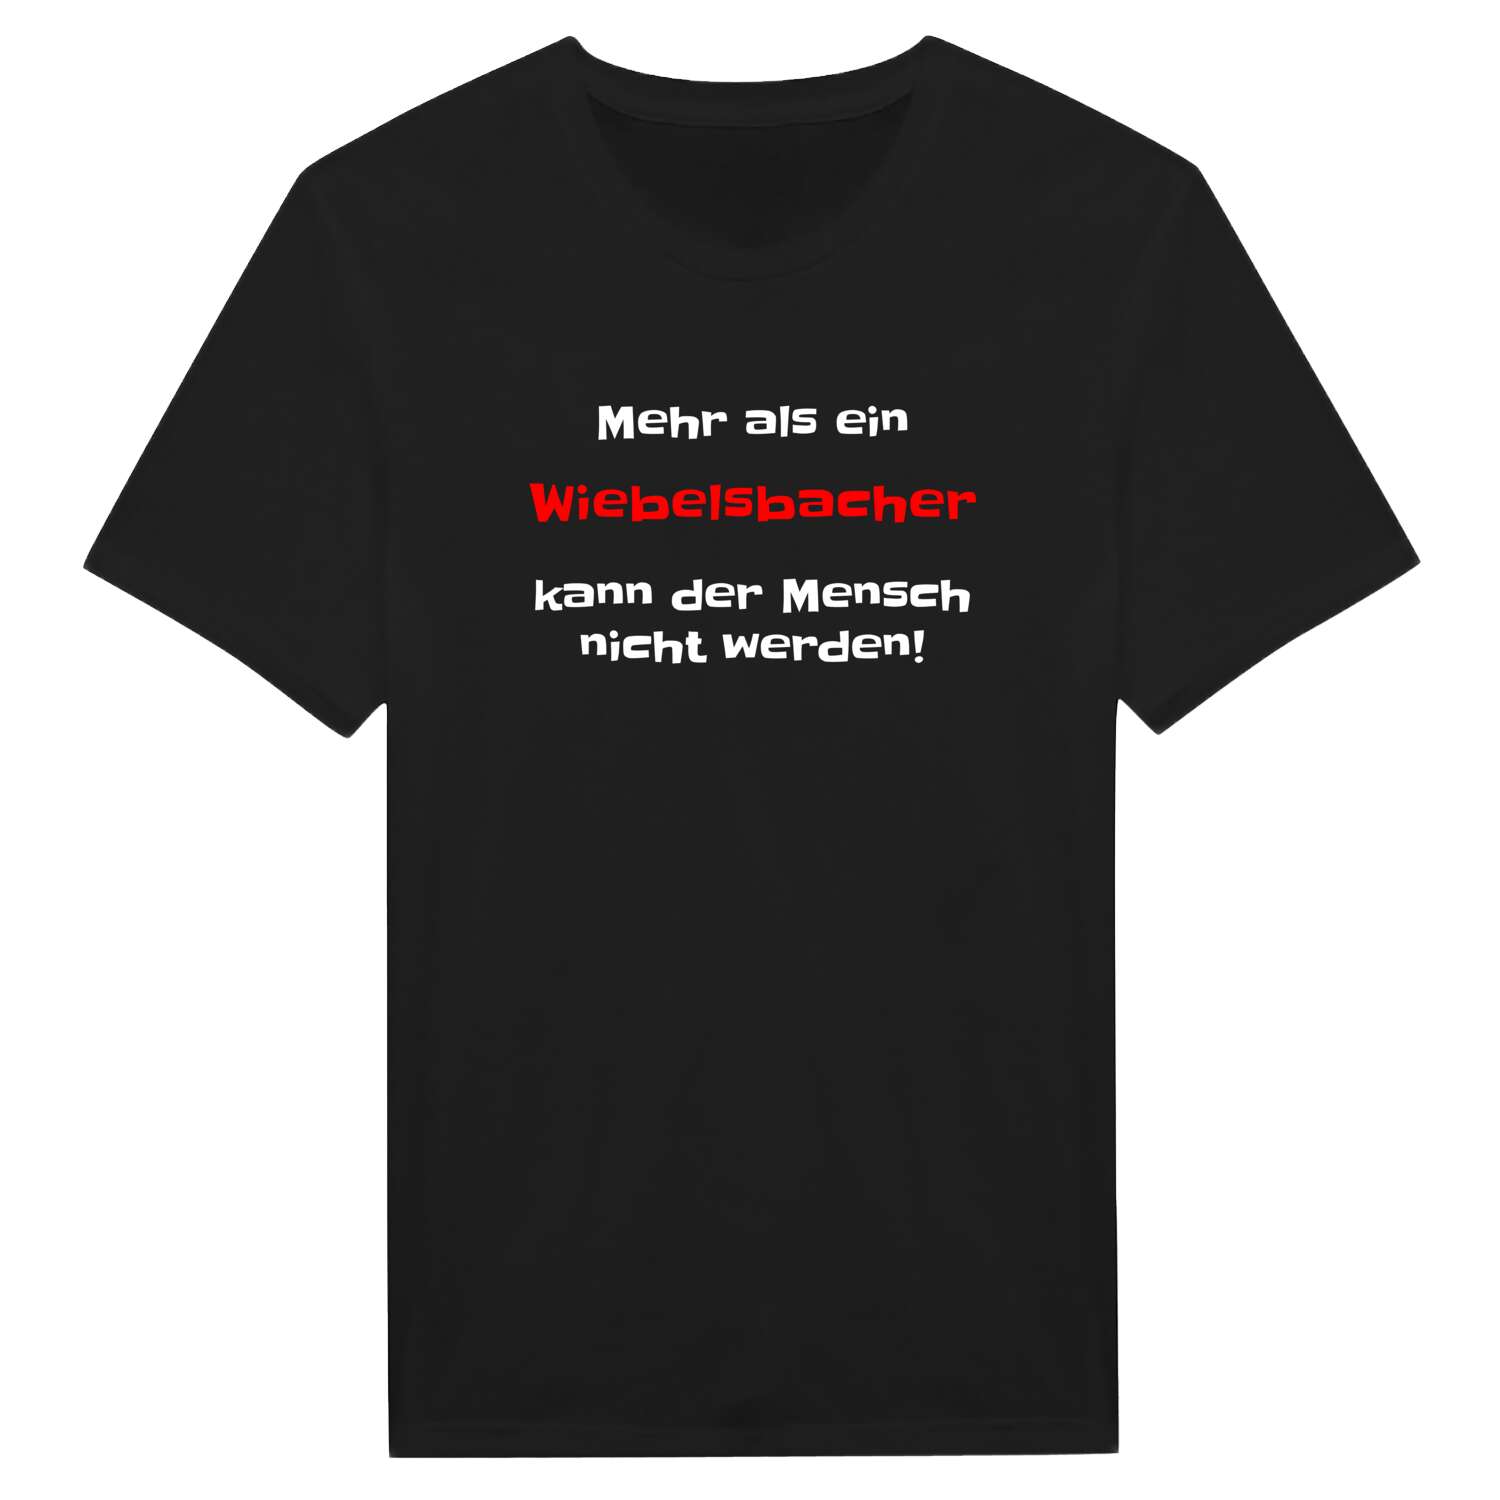 Wiebelsbach T-Shirt »Mehr als ein«